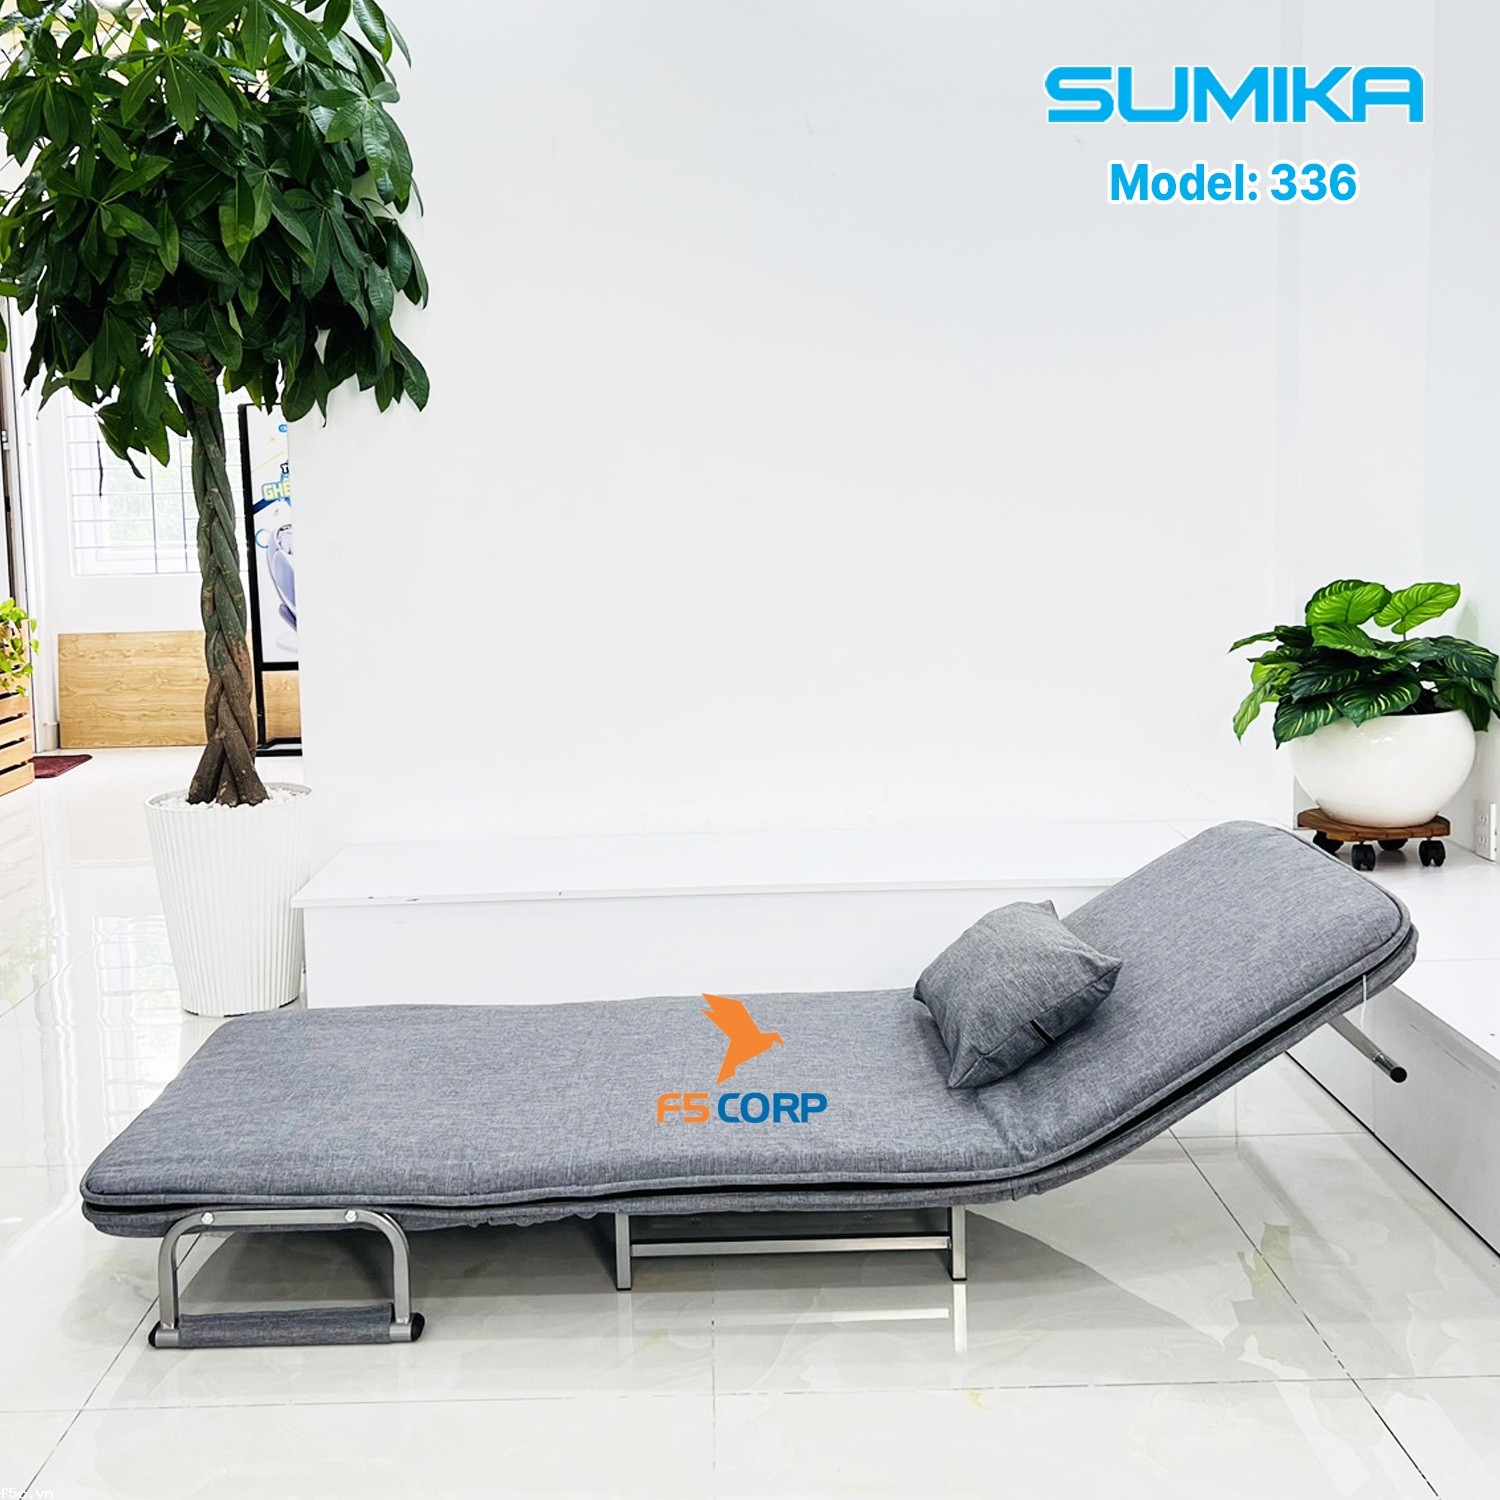 Ghế Sofa - Giường thông minh gấp gọn tiện lợi SUMIKA 336, rộng 80cm